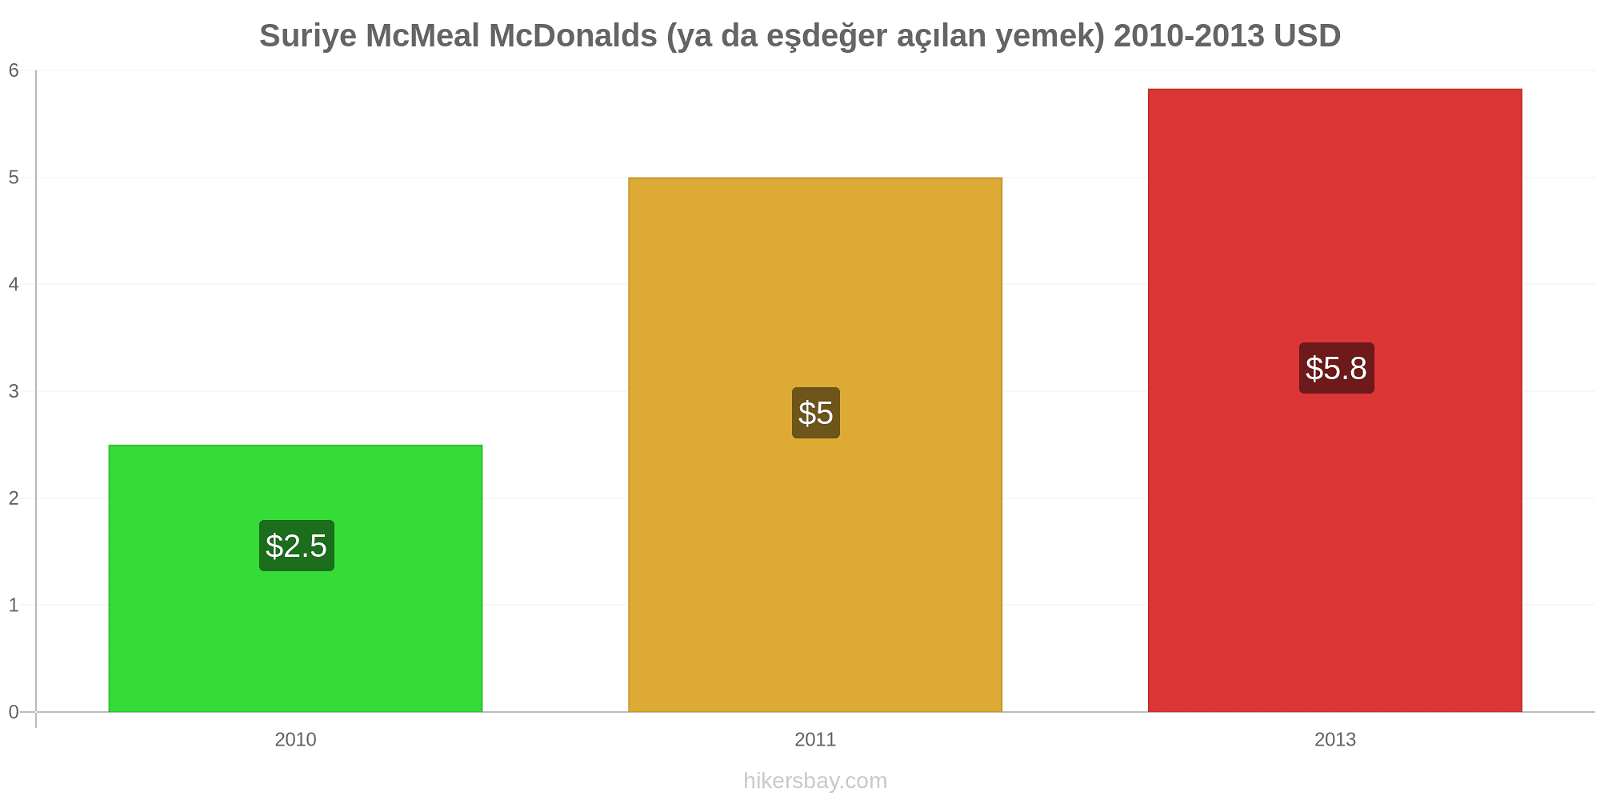 Suriye fiyat değişiklikleri McMeal McDonalds (ya da eşdeğer açılan yemek) hikersbay.com